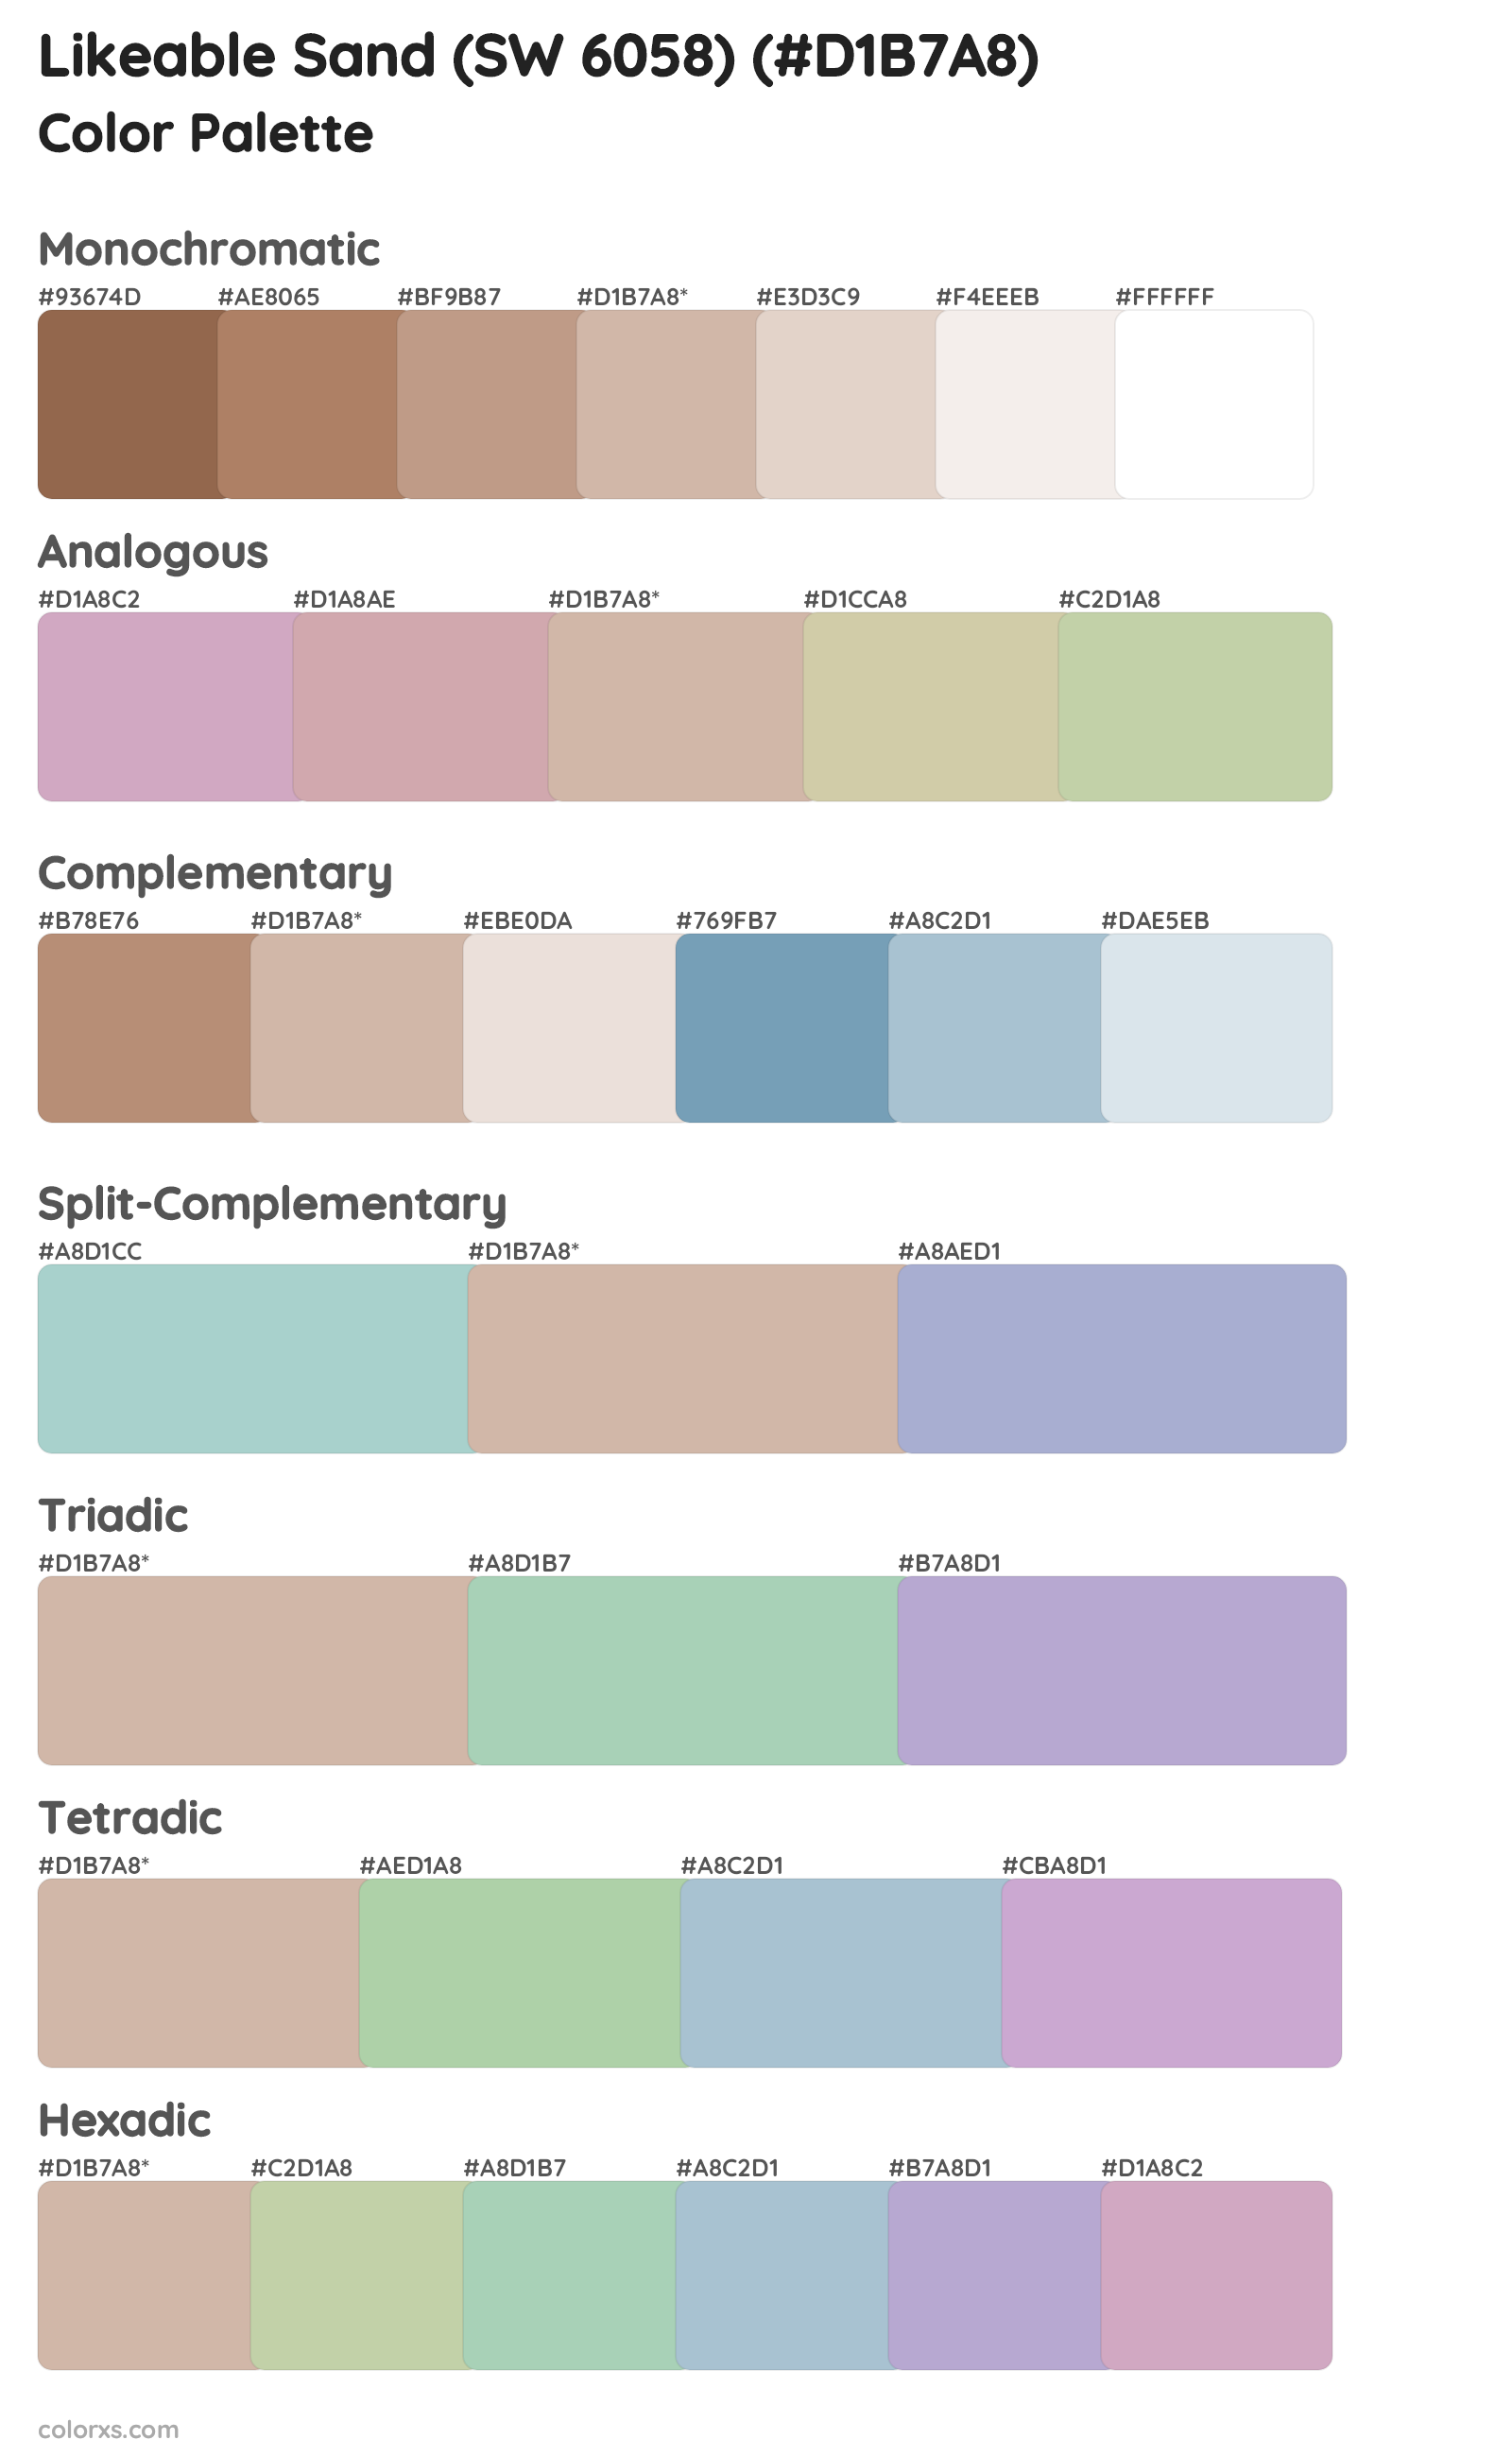 Likeable Sand (SW 6058) Color Scheme Palettes